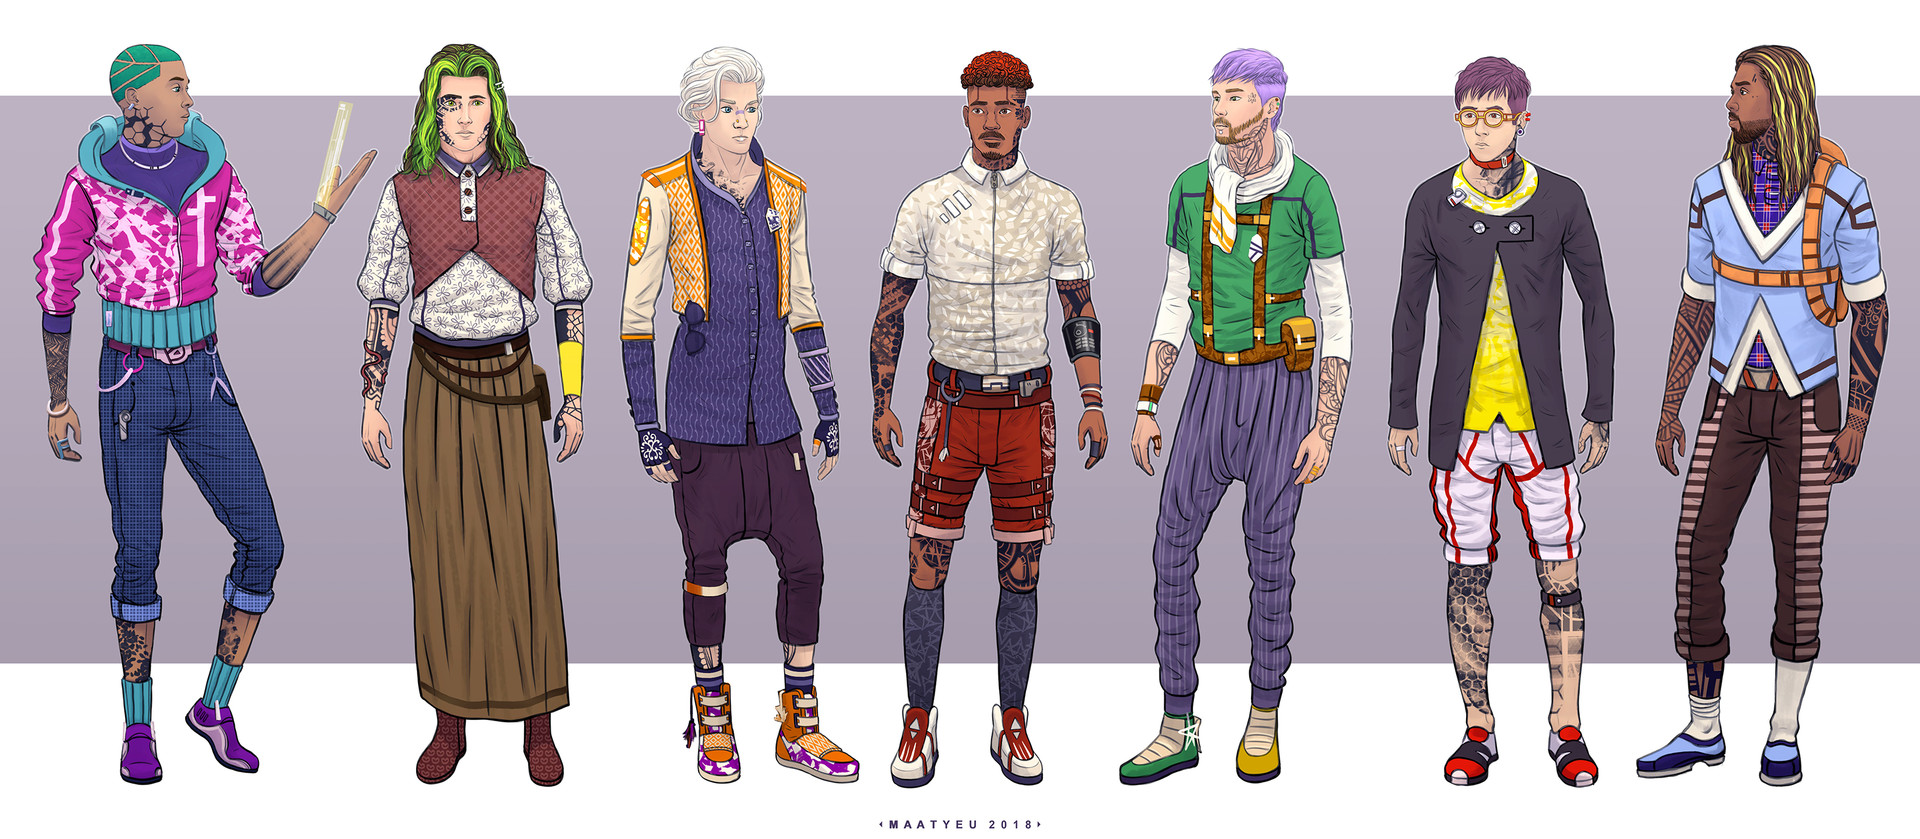 cyberpunk_7702, YYYYD -  Character design male, Futuristic character  design, Character design inspiration